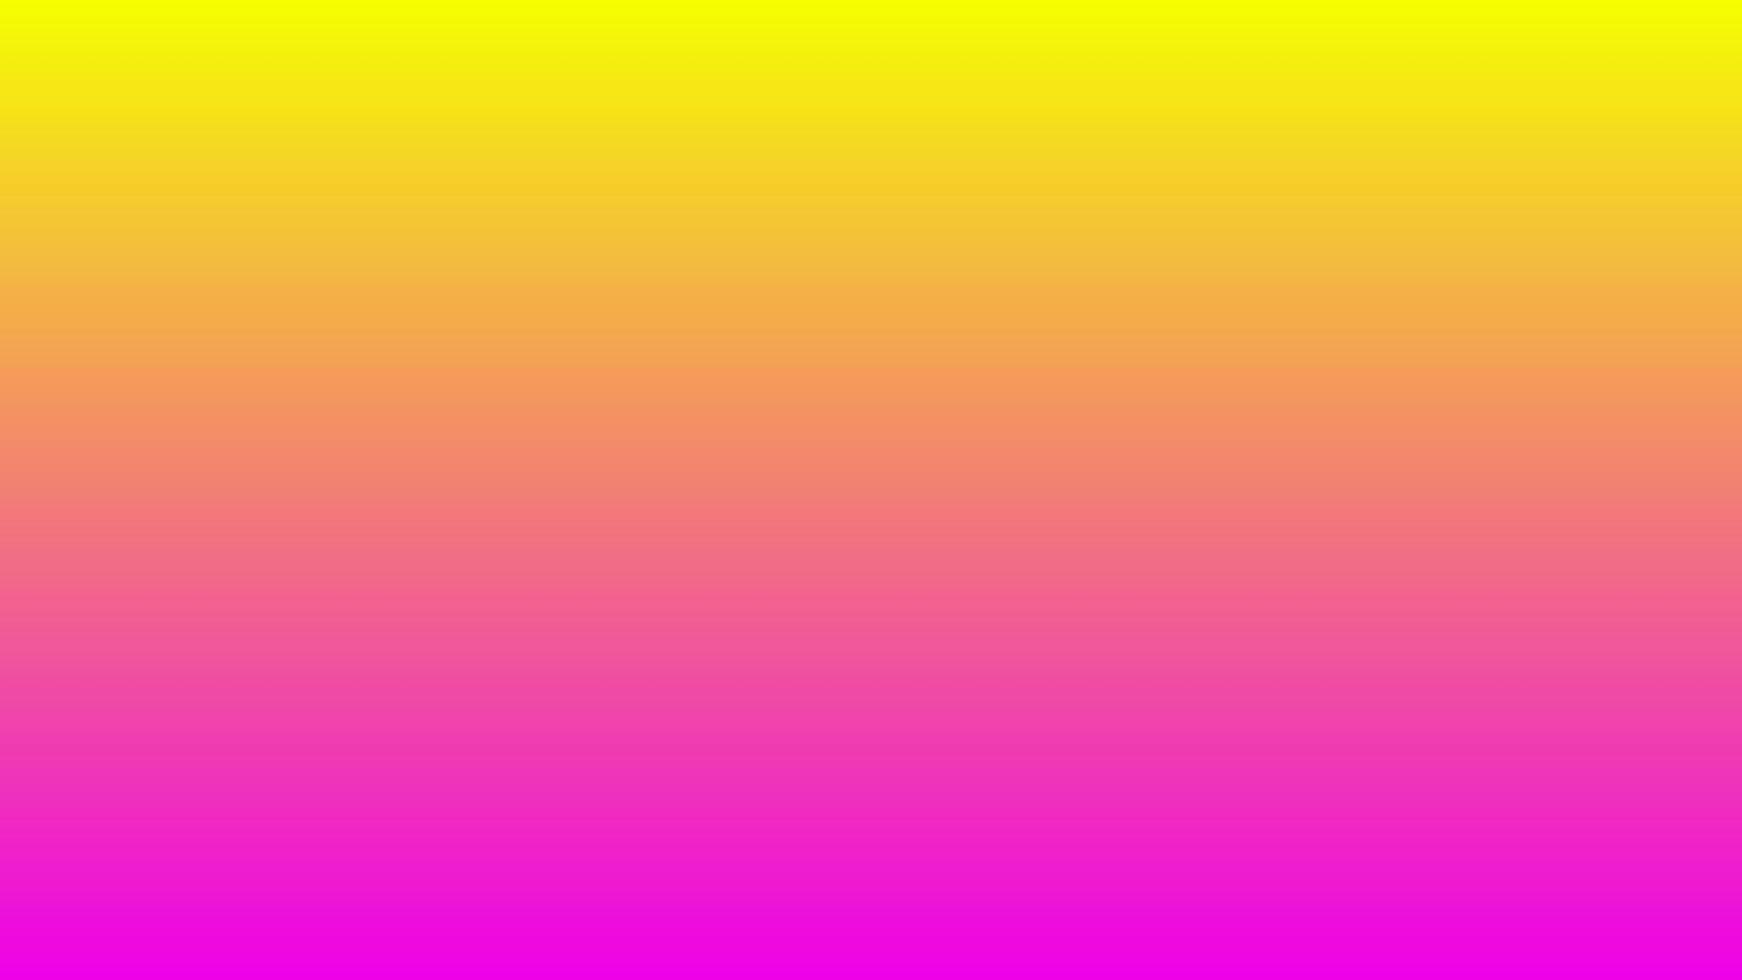 abstracte gele en roze gradiëntachtergrond perfect voor promotie, presentatie, behang, ontwerp enz vector